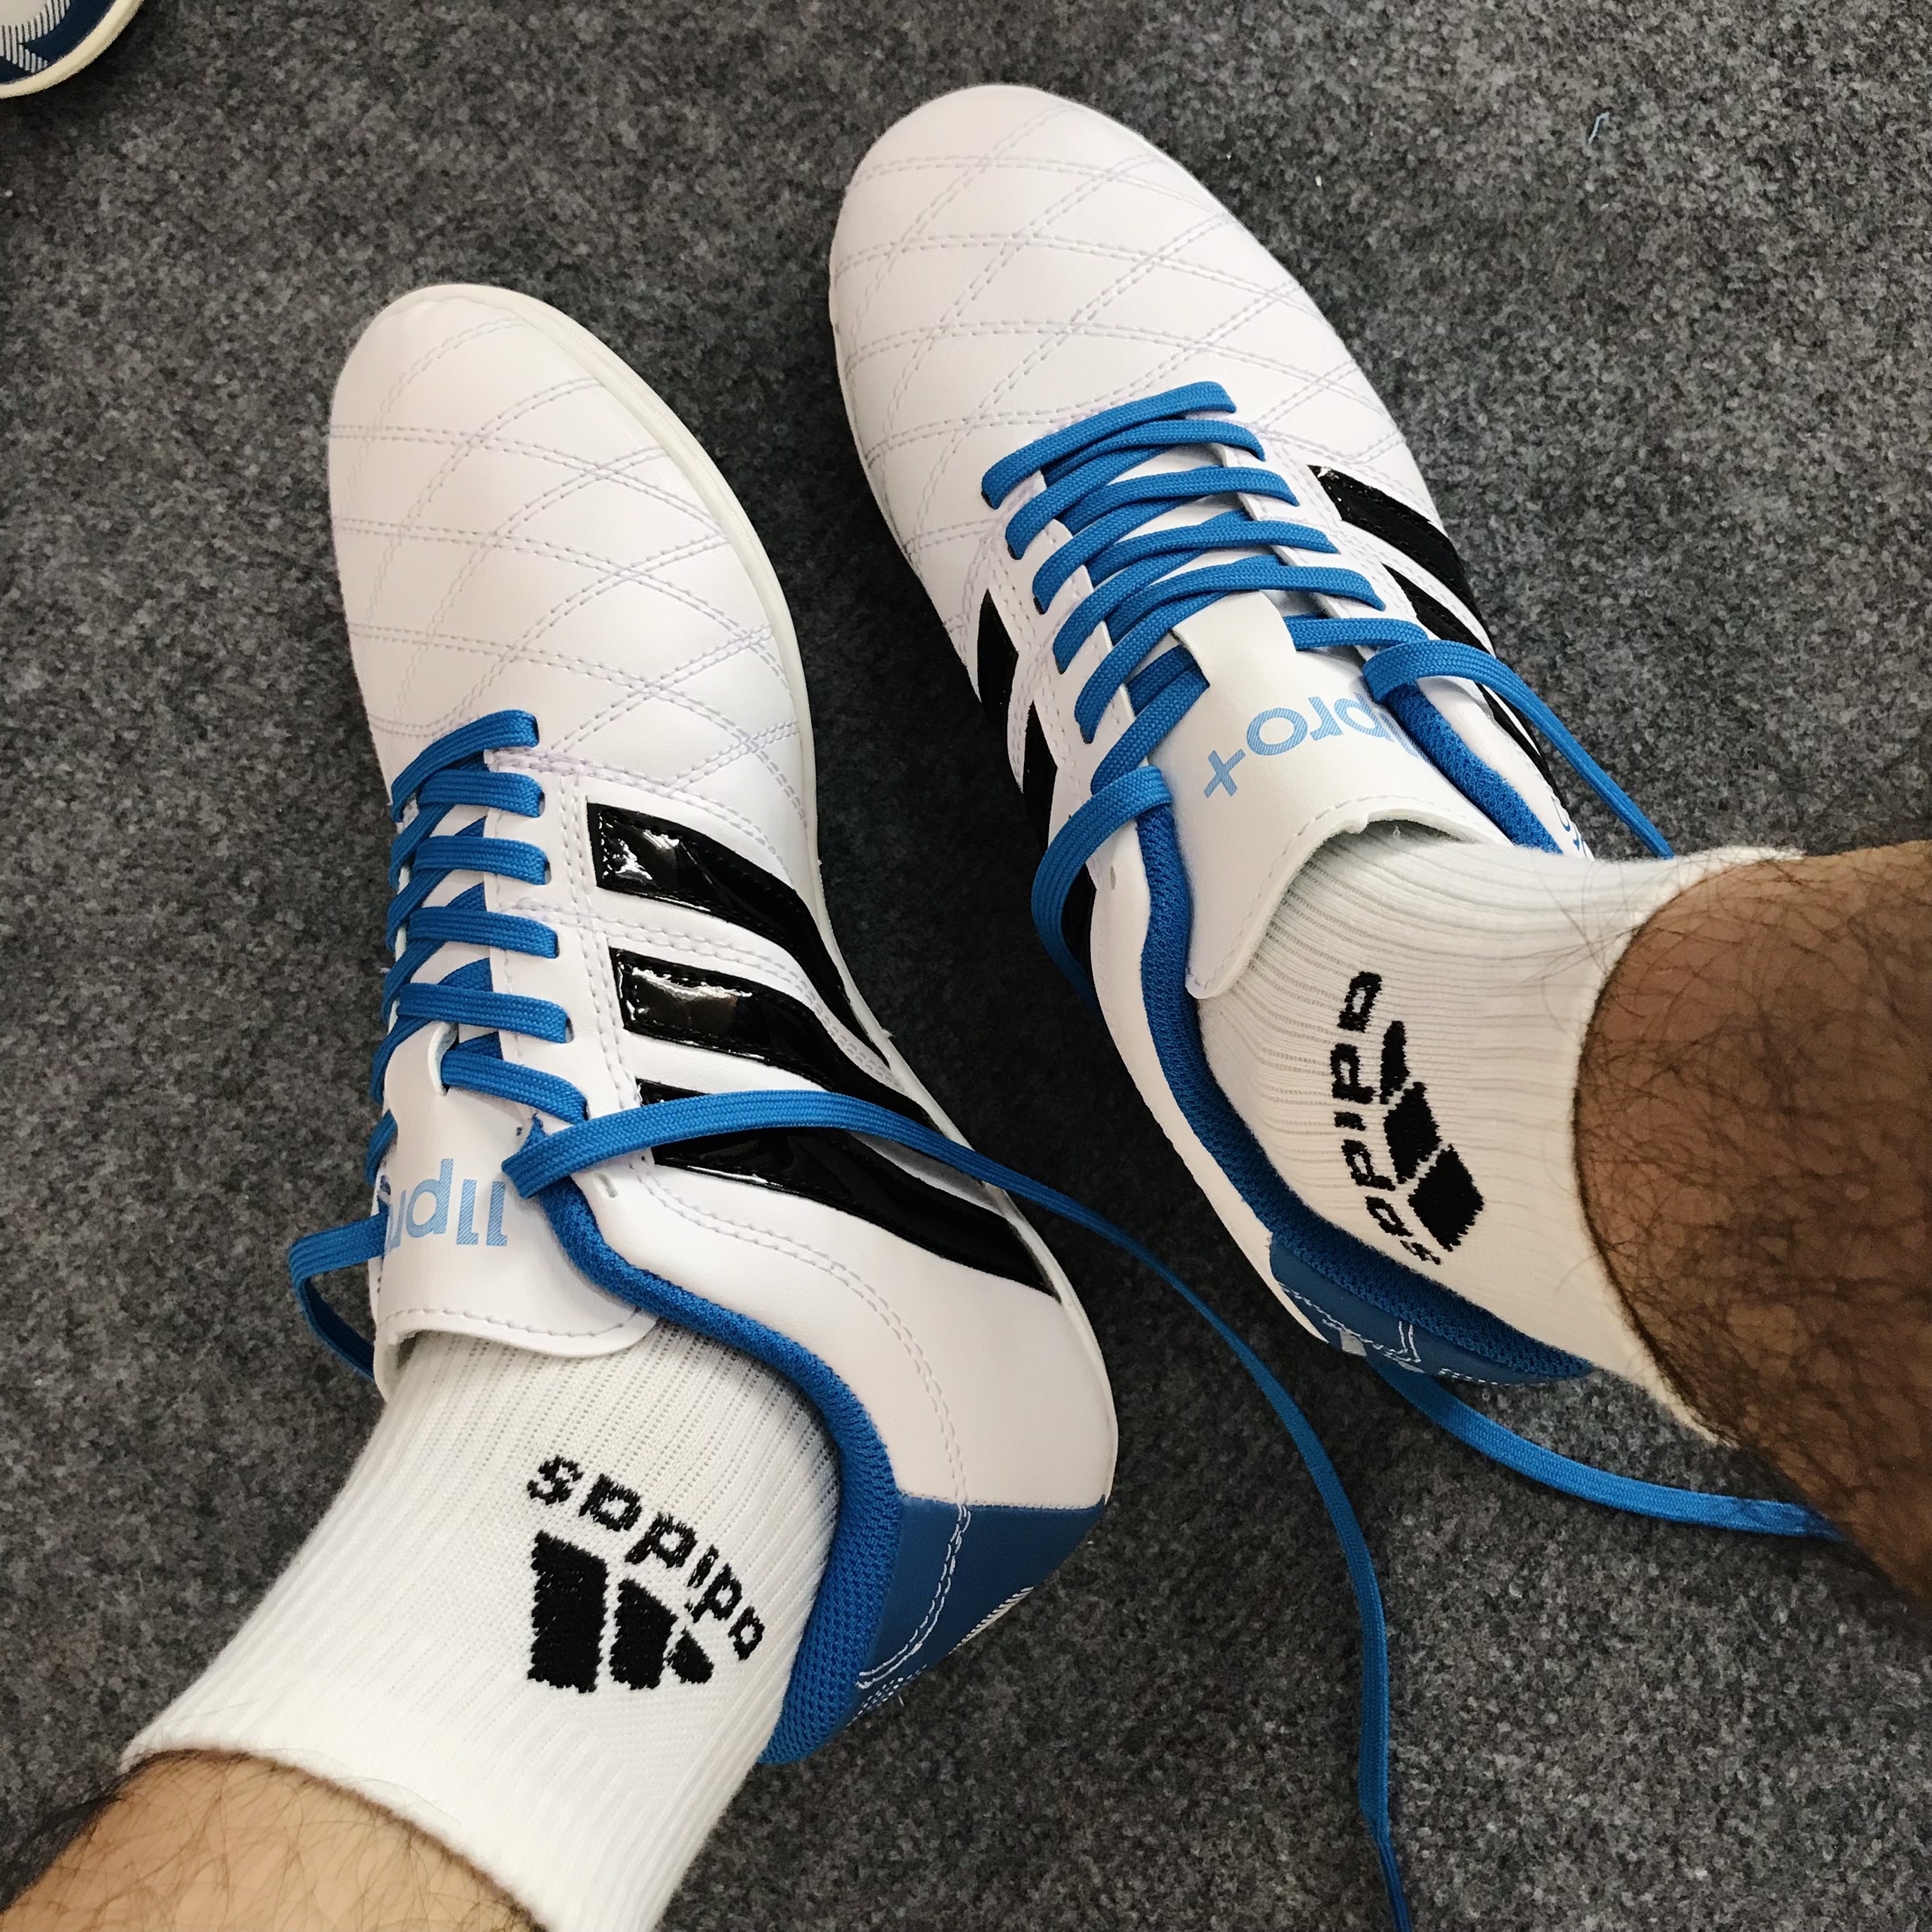 Giày bóng đá Toni Kroos 3 sọc cao cấp mẫu mới